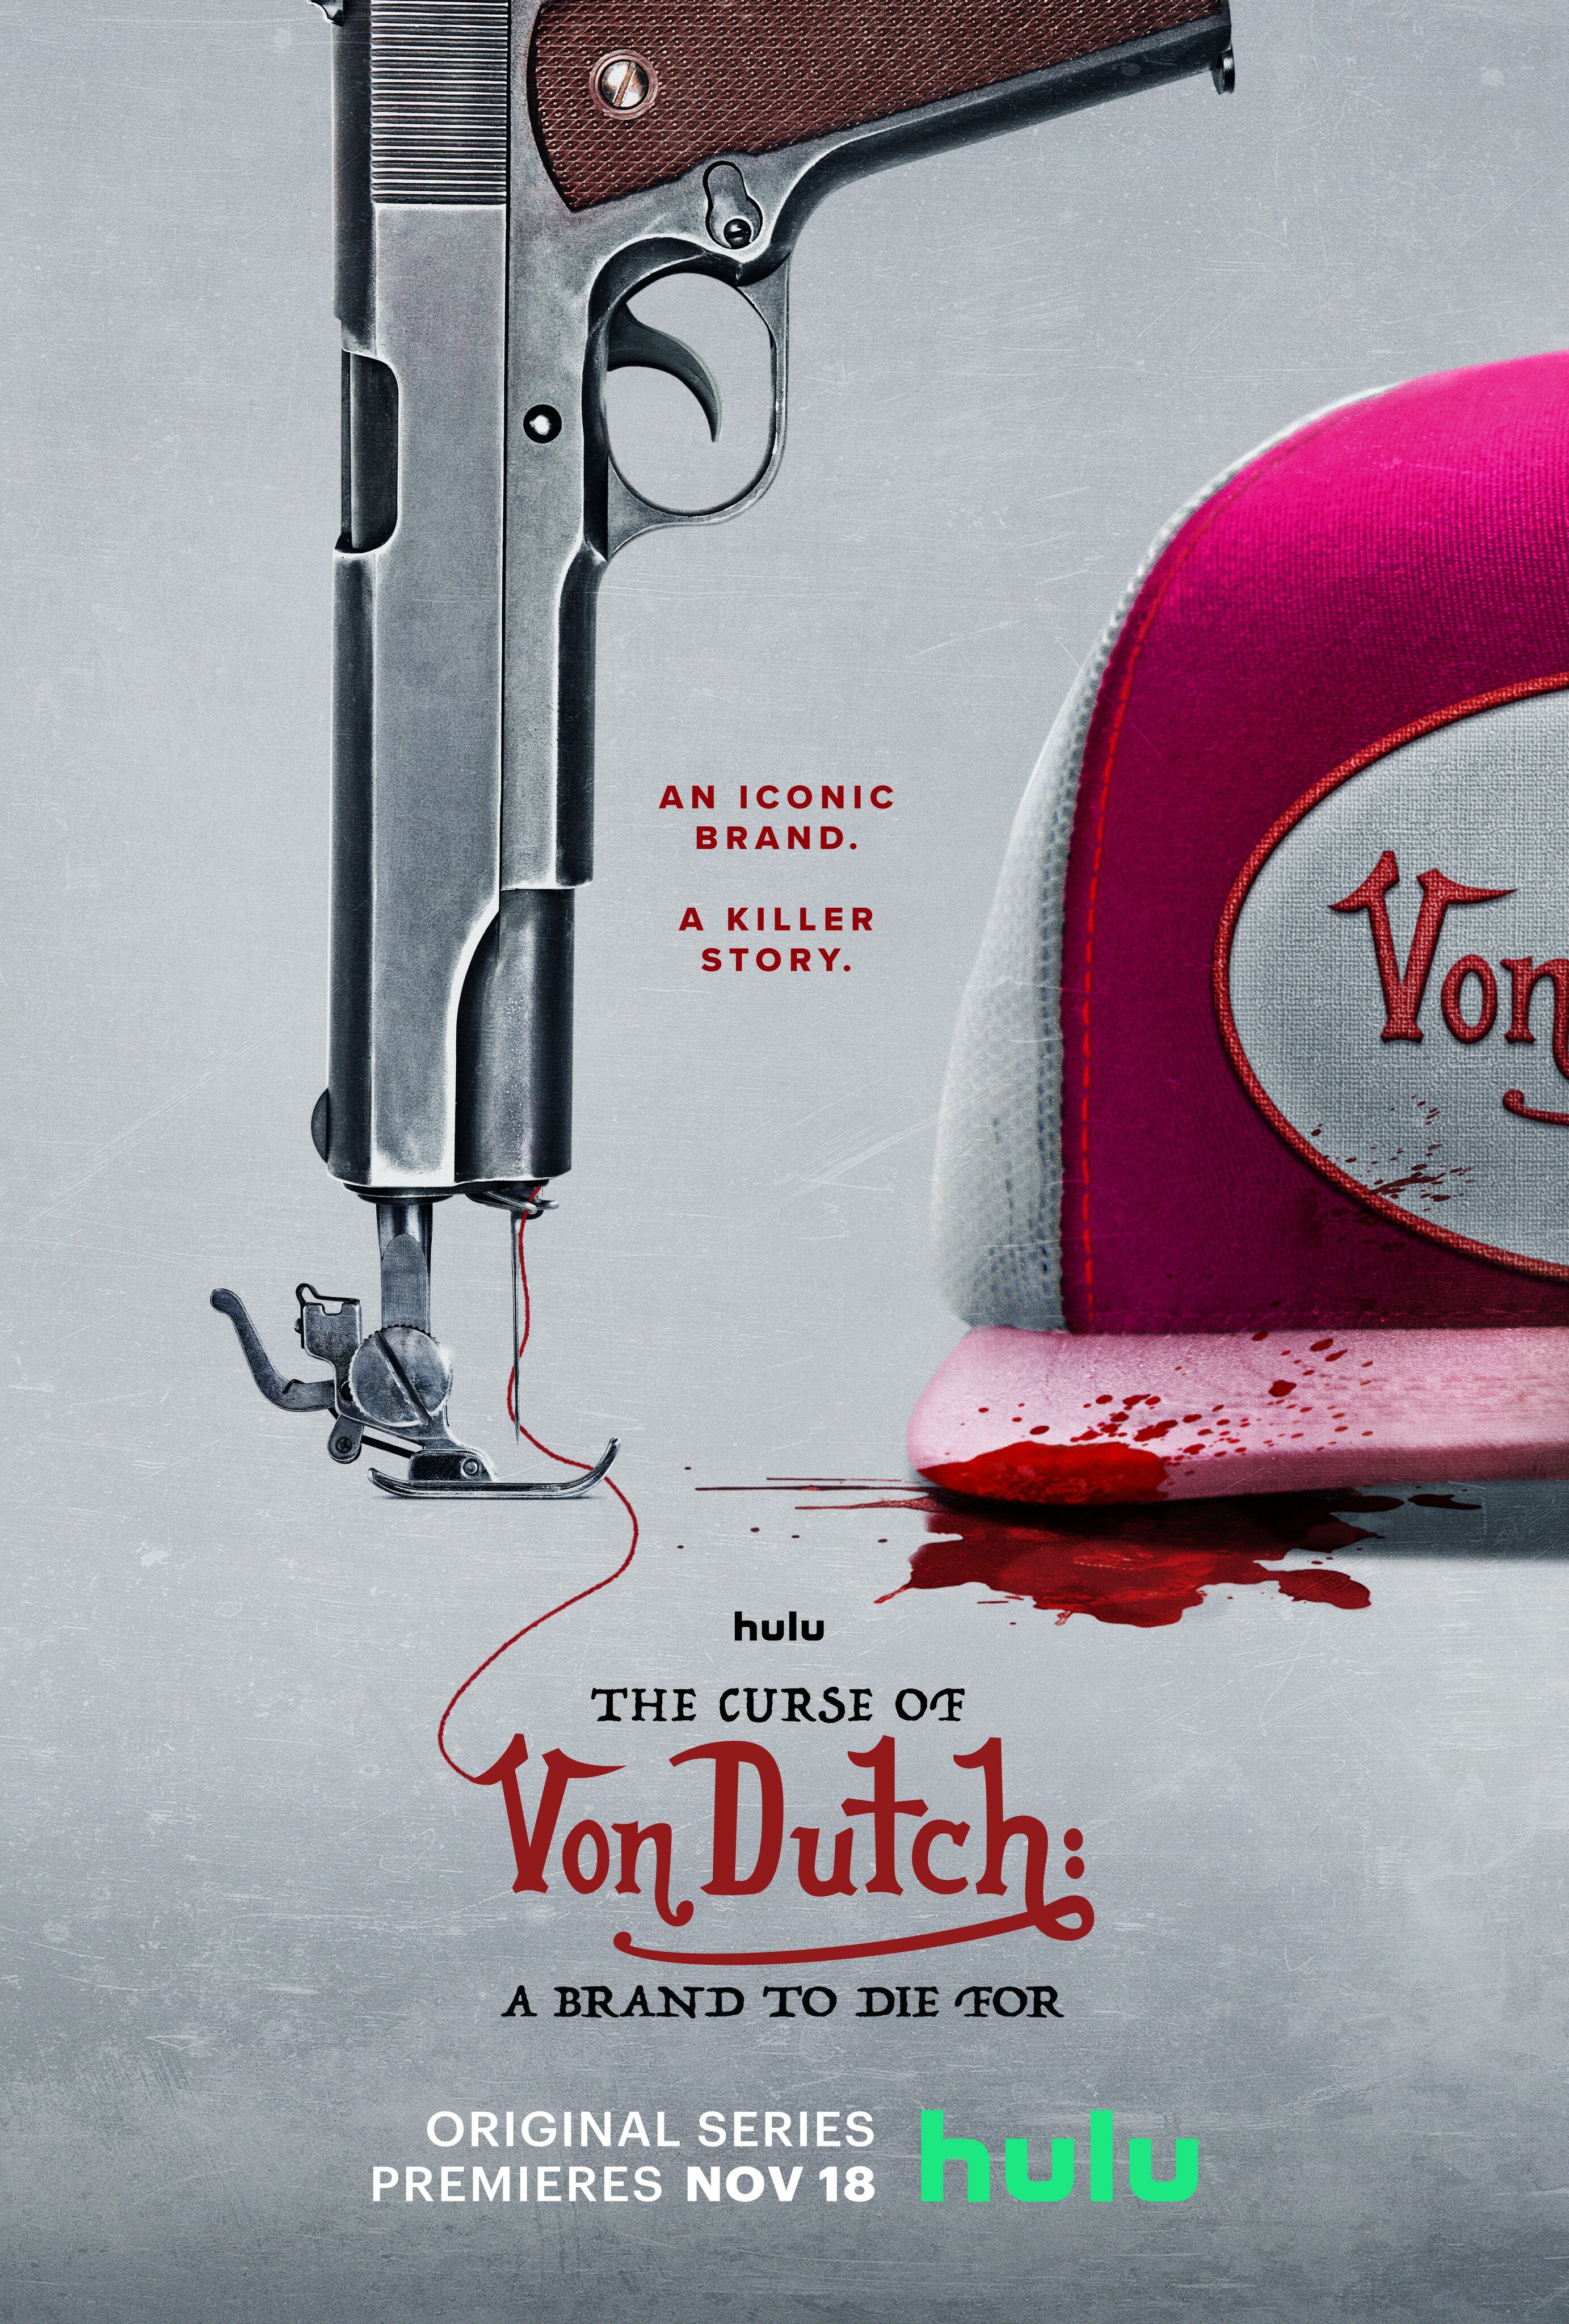 The Curse of Von Dutch: A Brand to Die For ne zaman